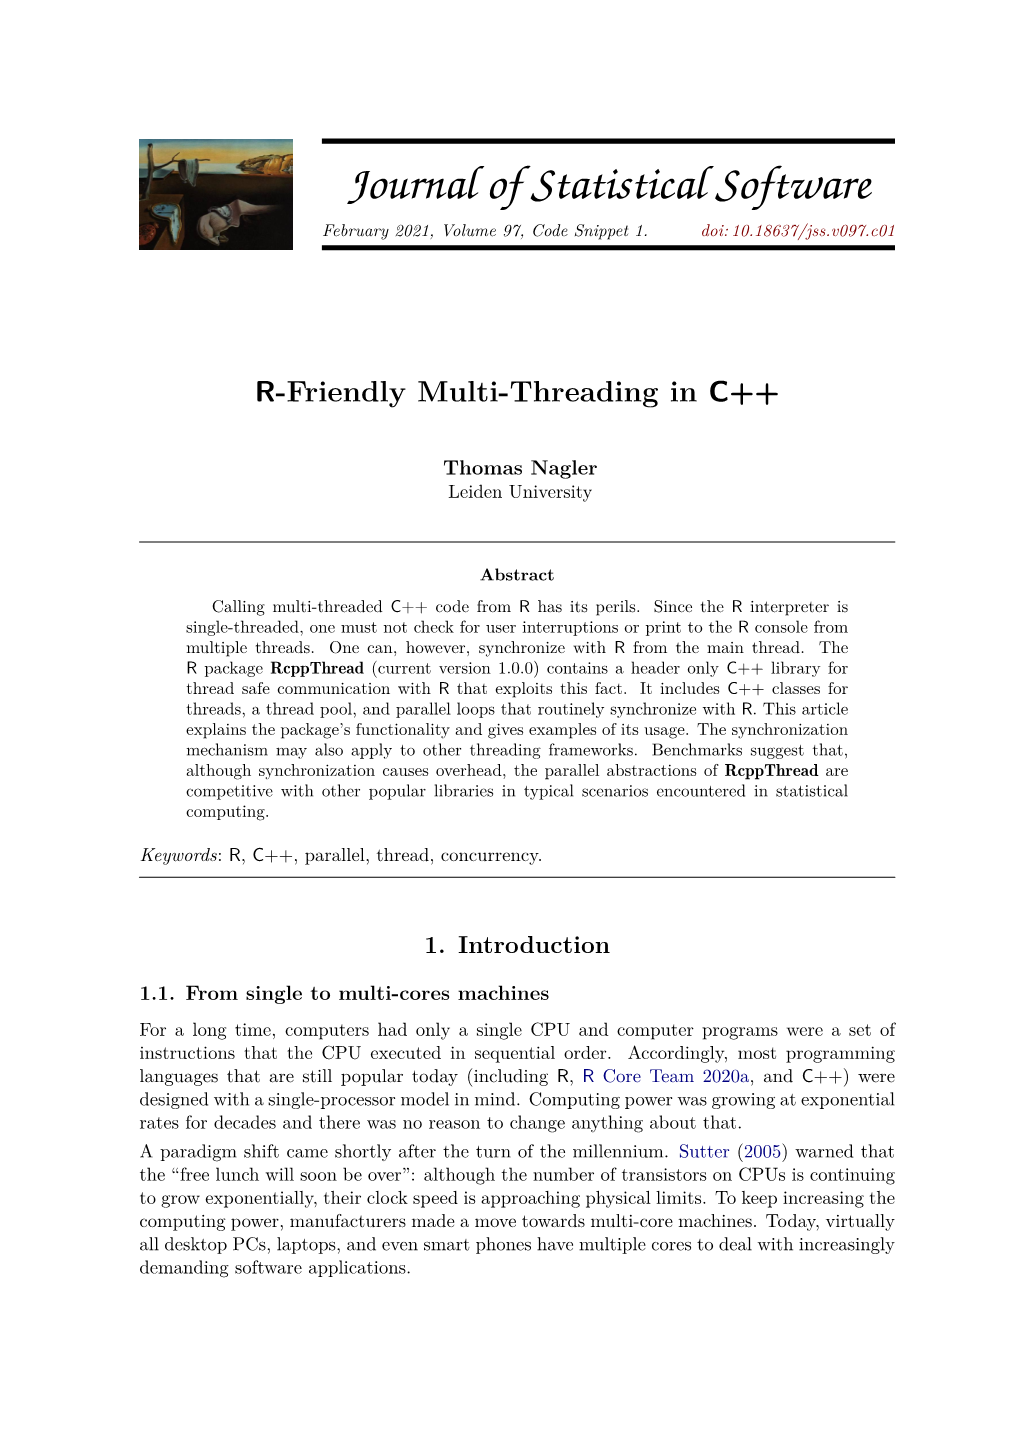 R-Friendly Multi-Threading in C++